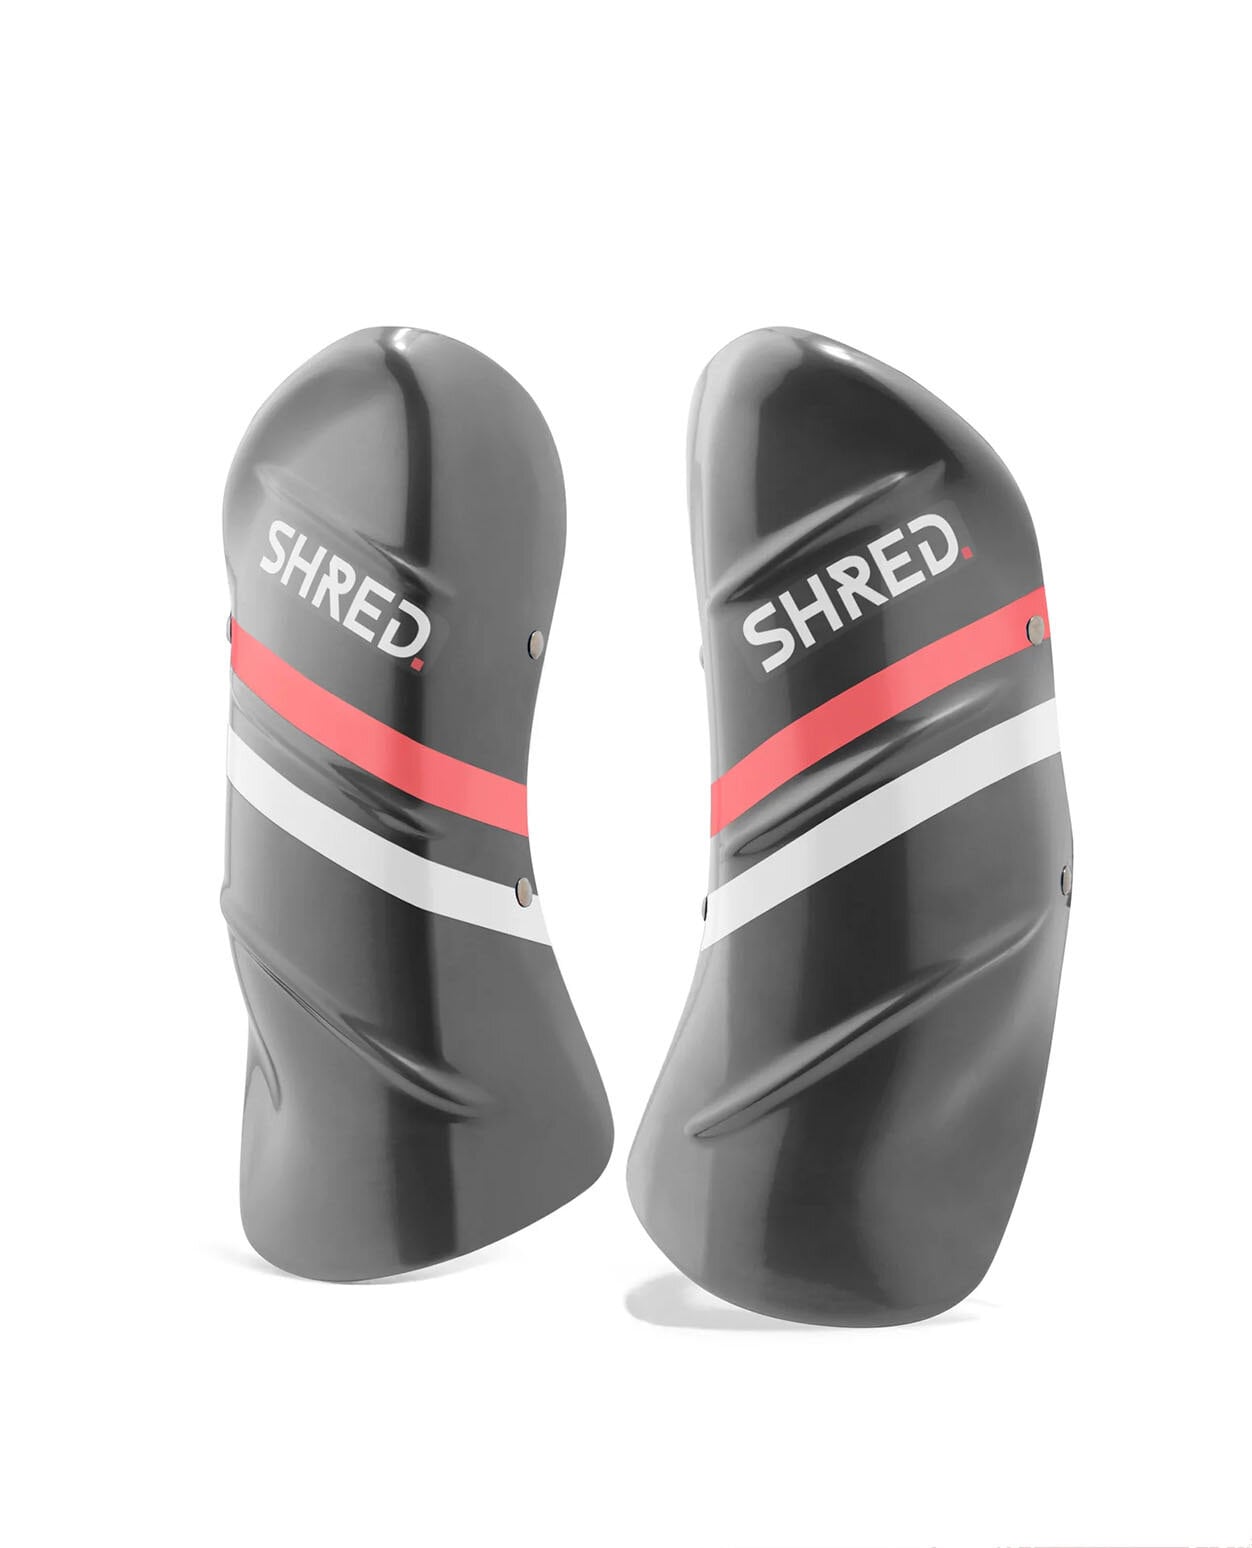 Shred Shin Guards